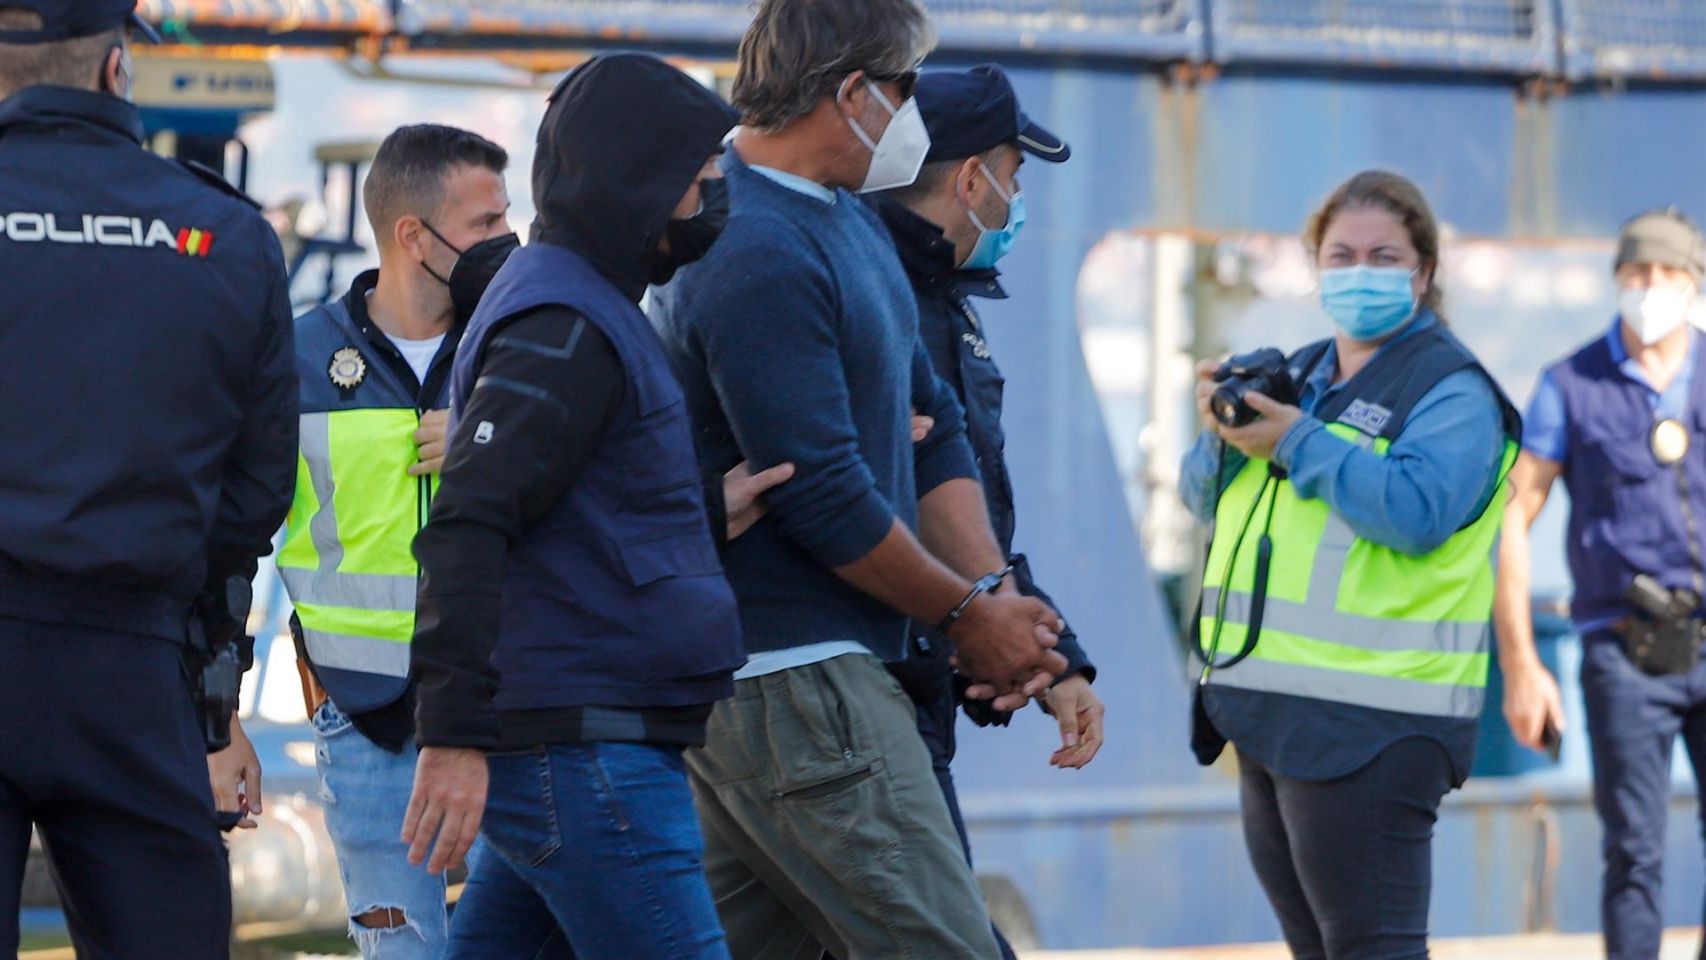 Varios policías acompañan a uno de los detenidos del velero interceptado en aguas del Atlántico norte